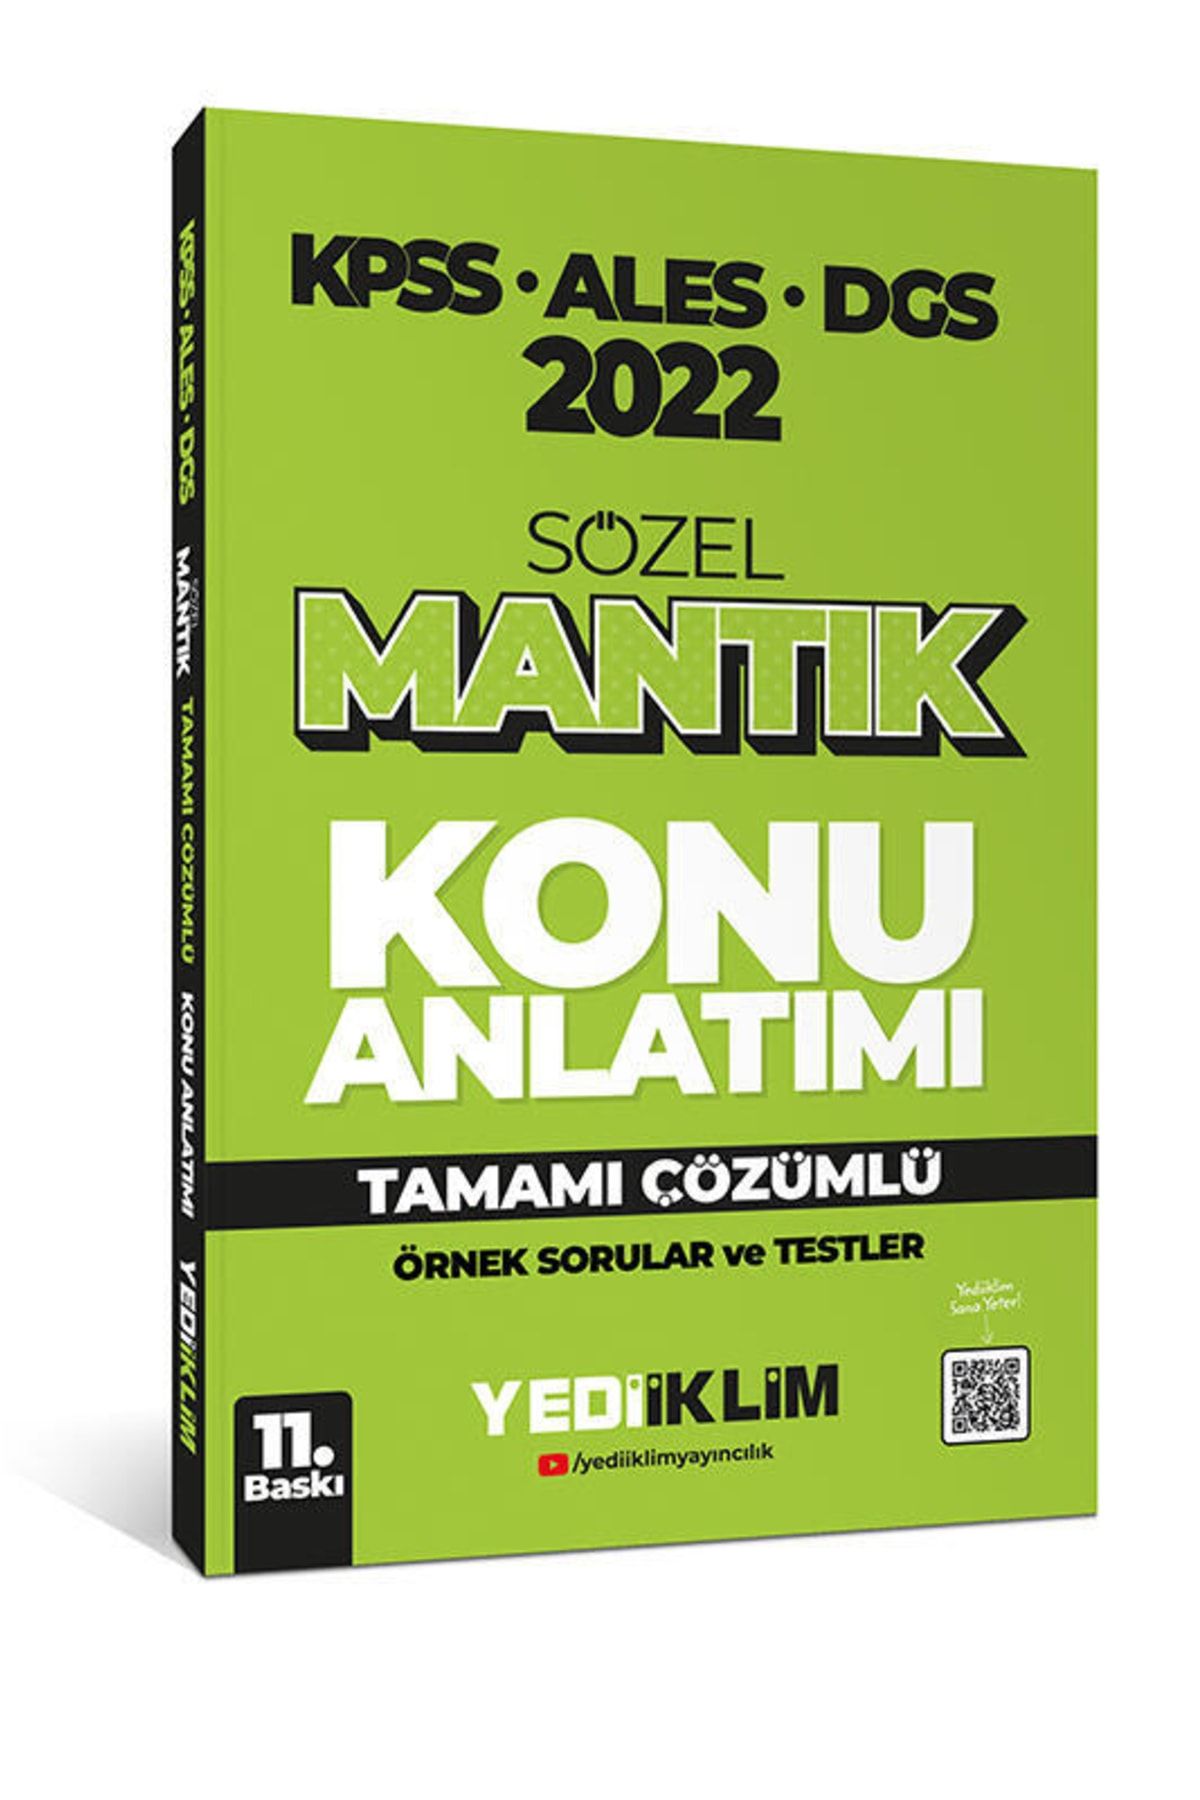 Yediiklim Yayınları 2022 Kpss-ales-dgs Sözel Mantık Konu Anlatımı